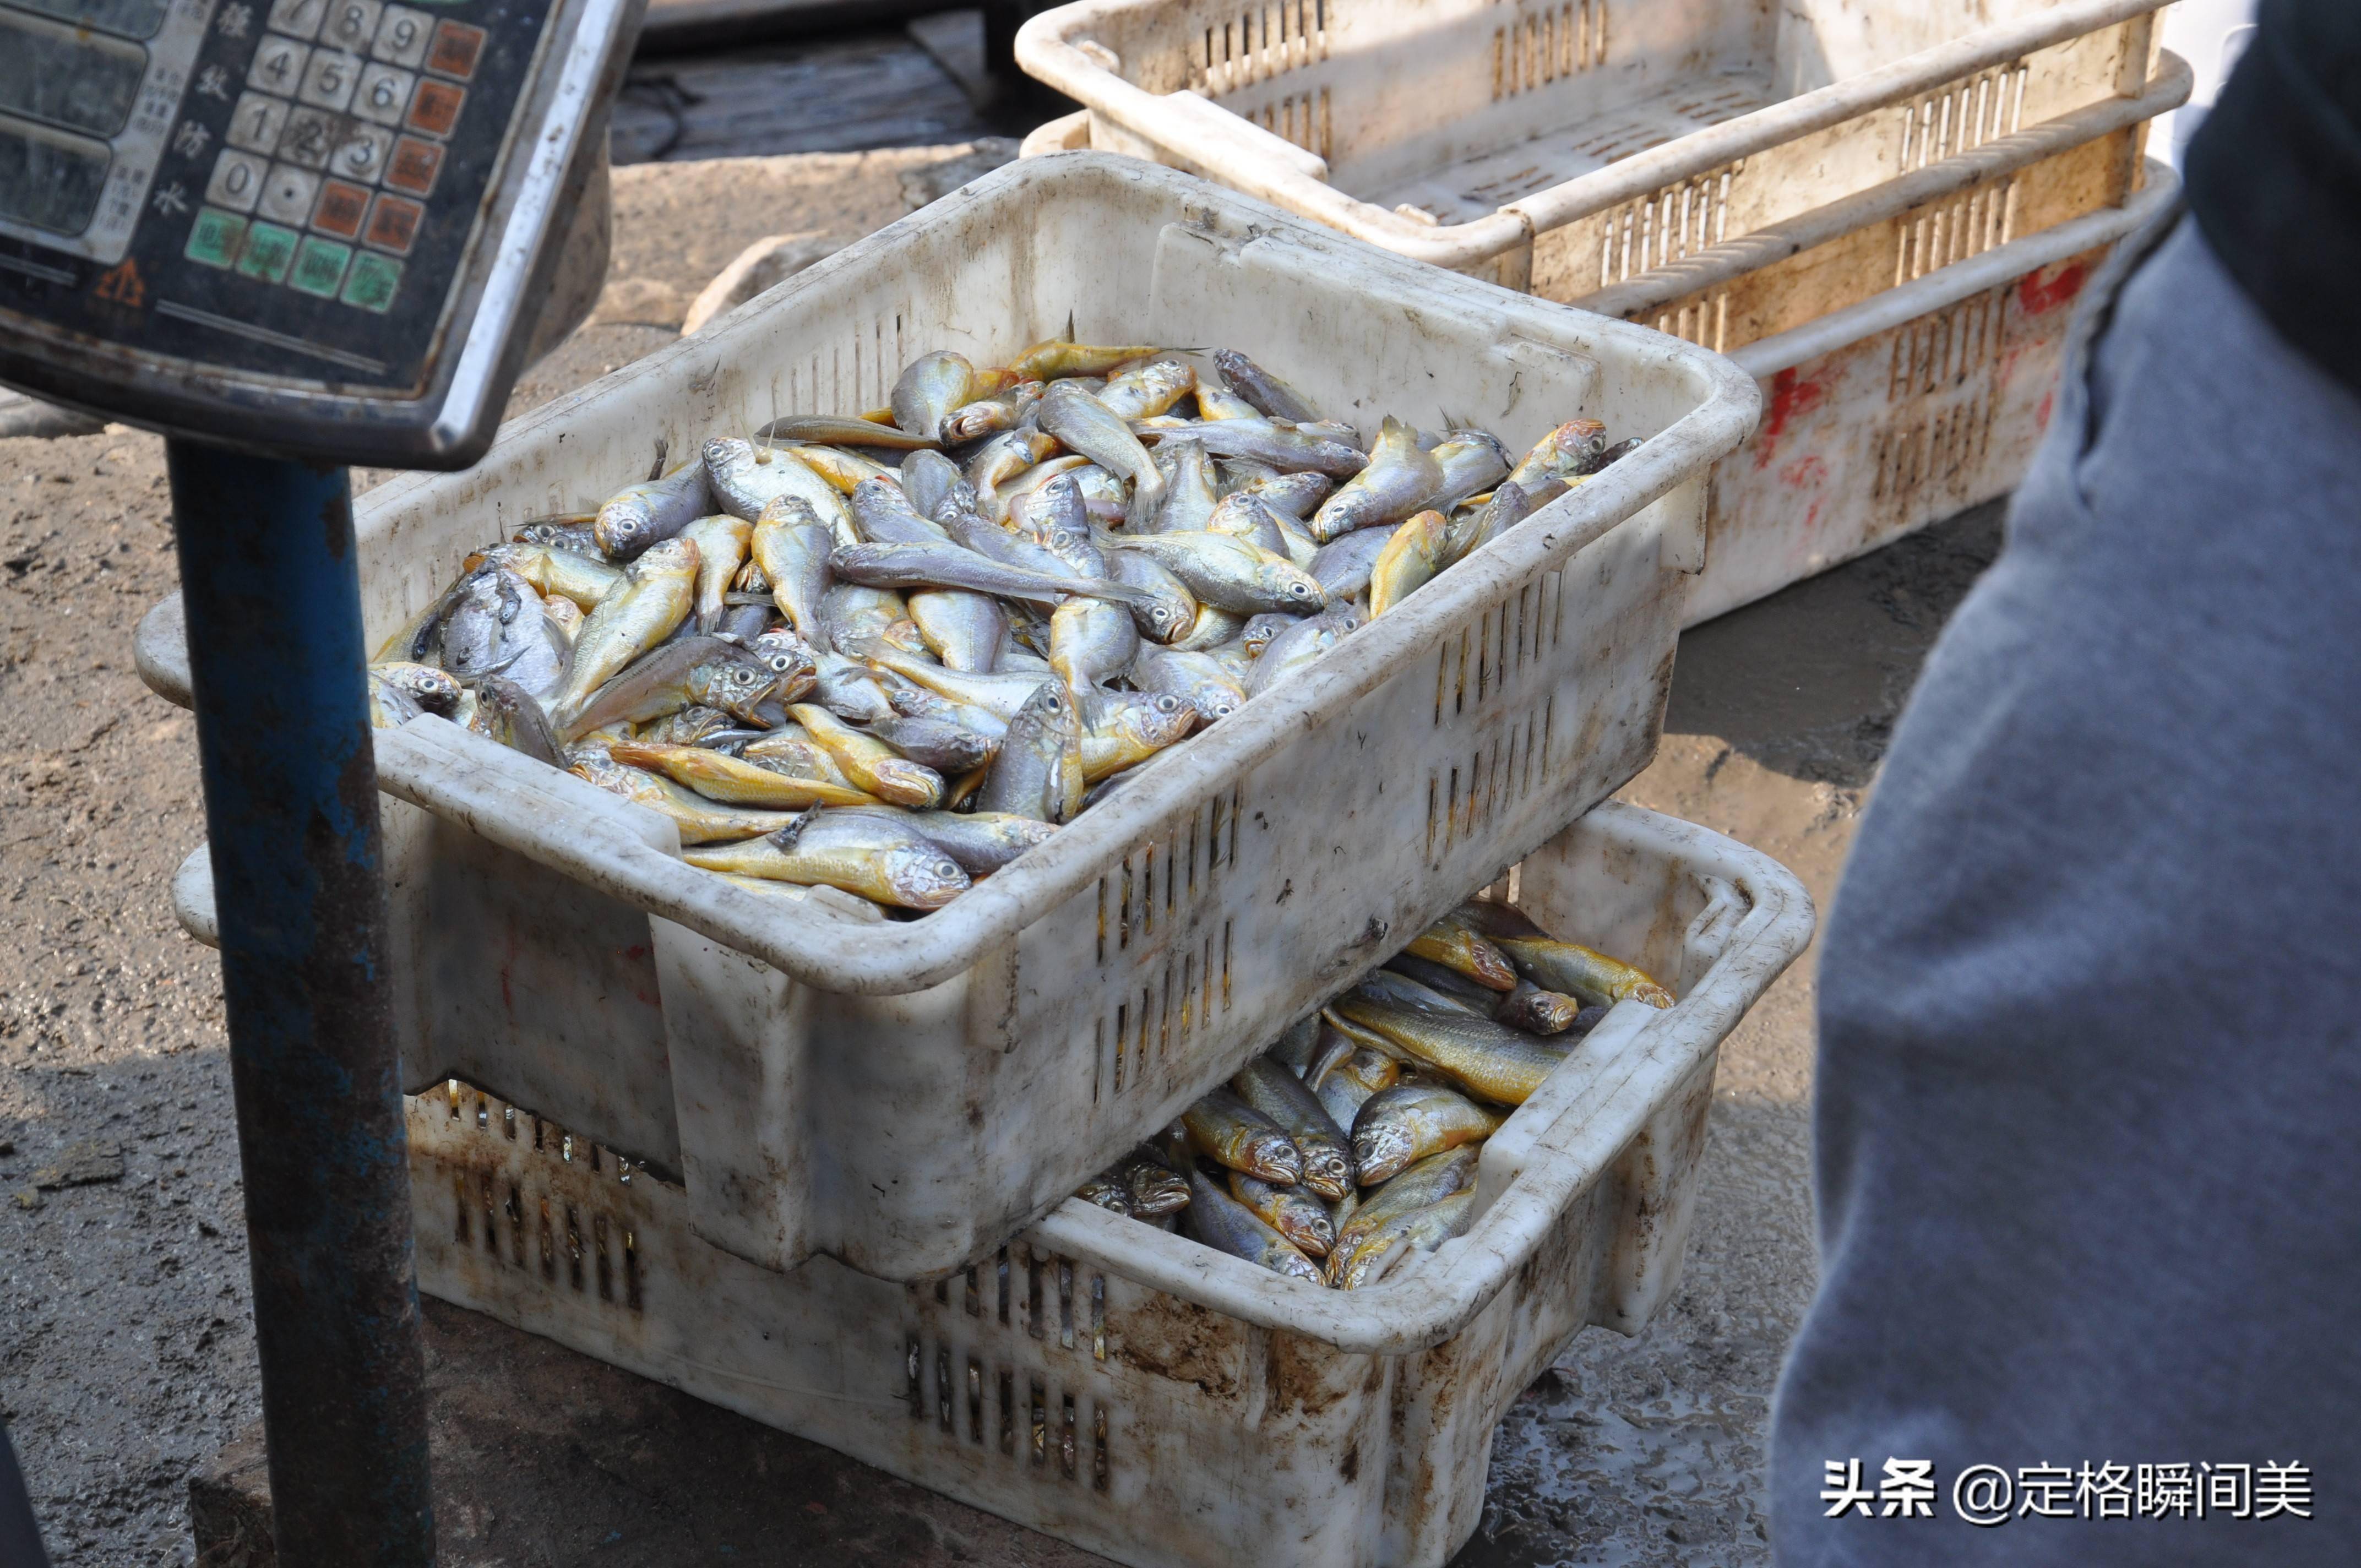 青岛开海在即,盘点本地码头的小海鲜,刀鱼不到10元一斤